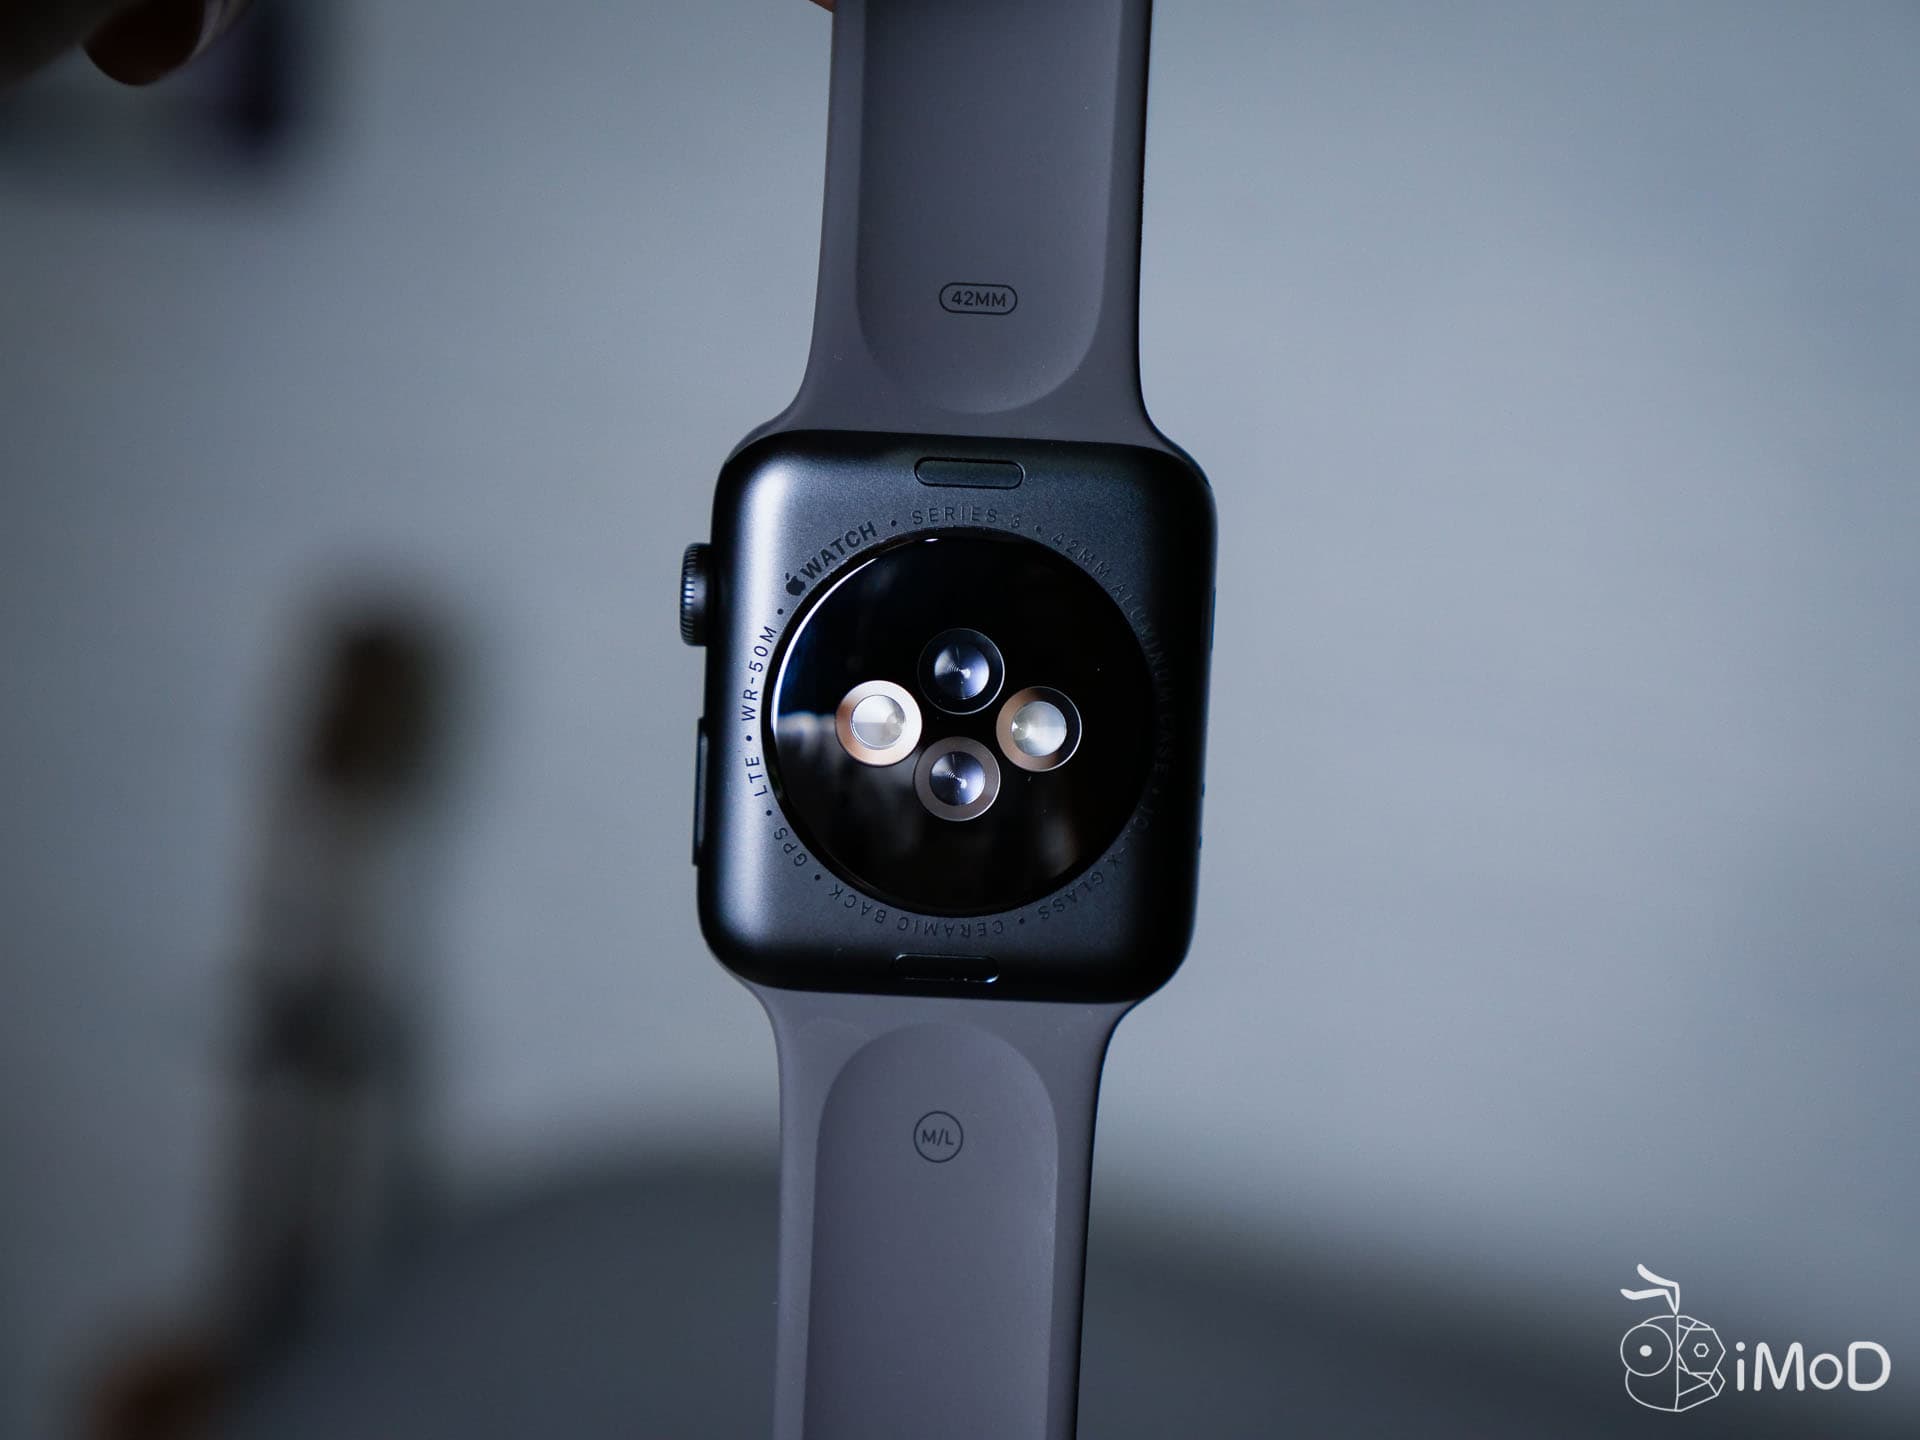 รีวิว Apple Watch Series 3 รุ่น Gps Cellular อิสระบนข้อมือที่แท้จริง 